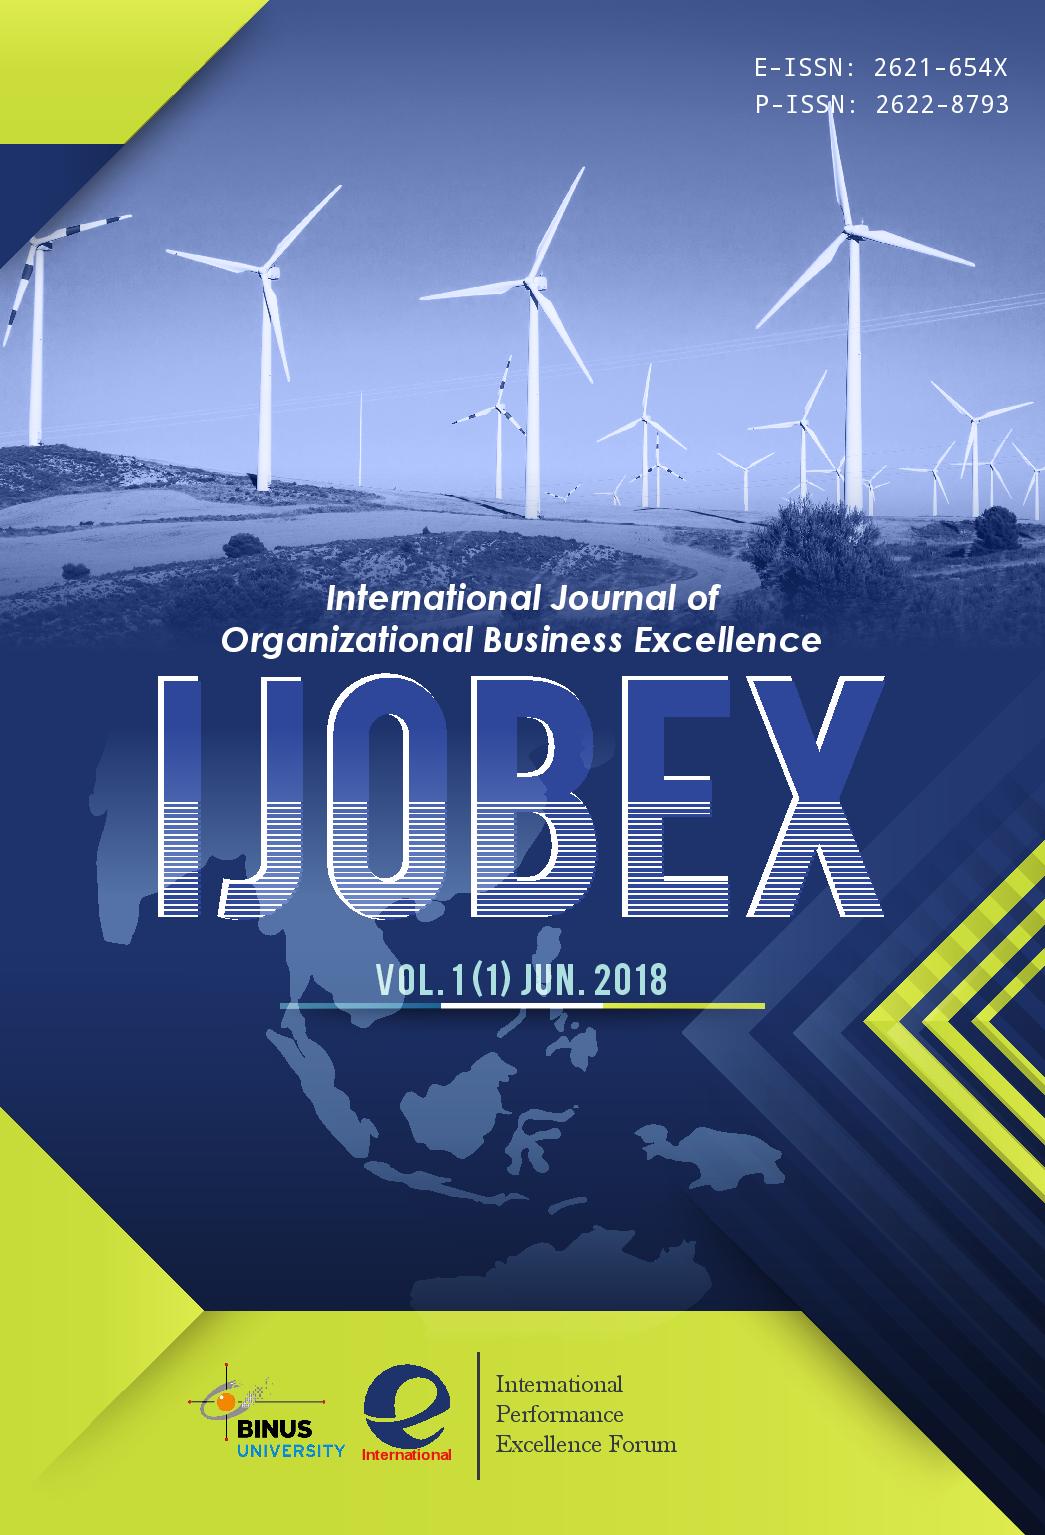 International Journal of Organizational Business Excellence (IJOBEX)